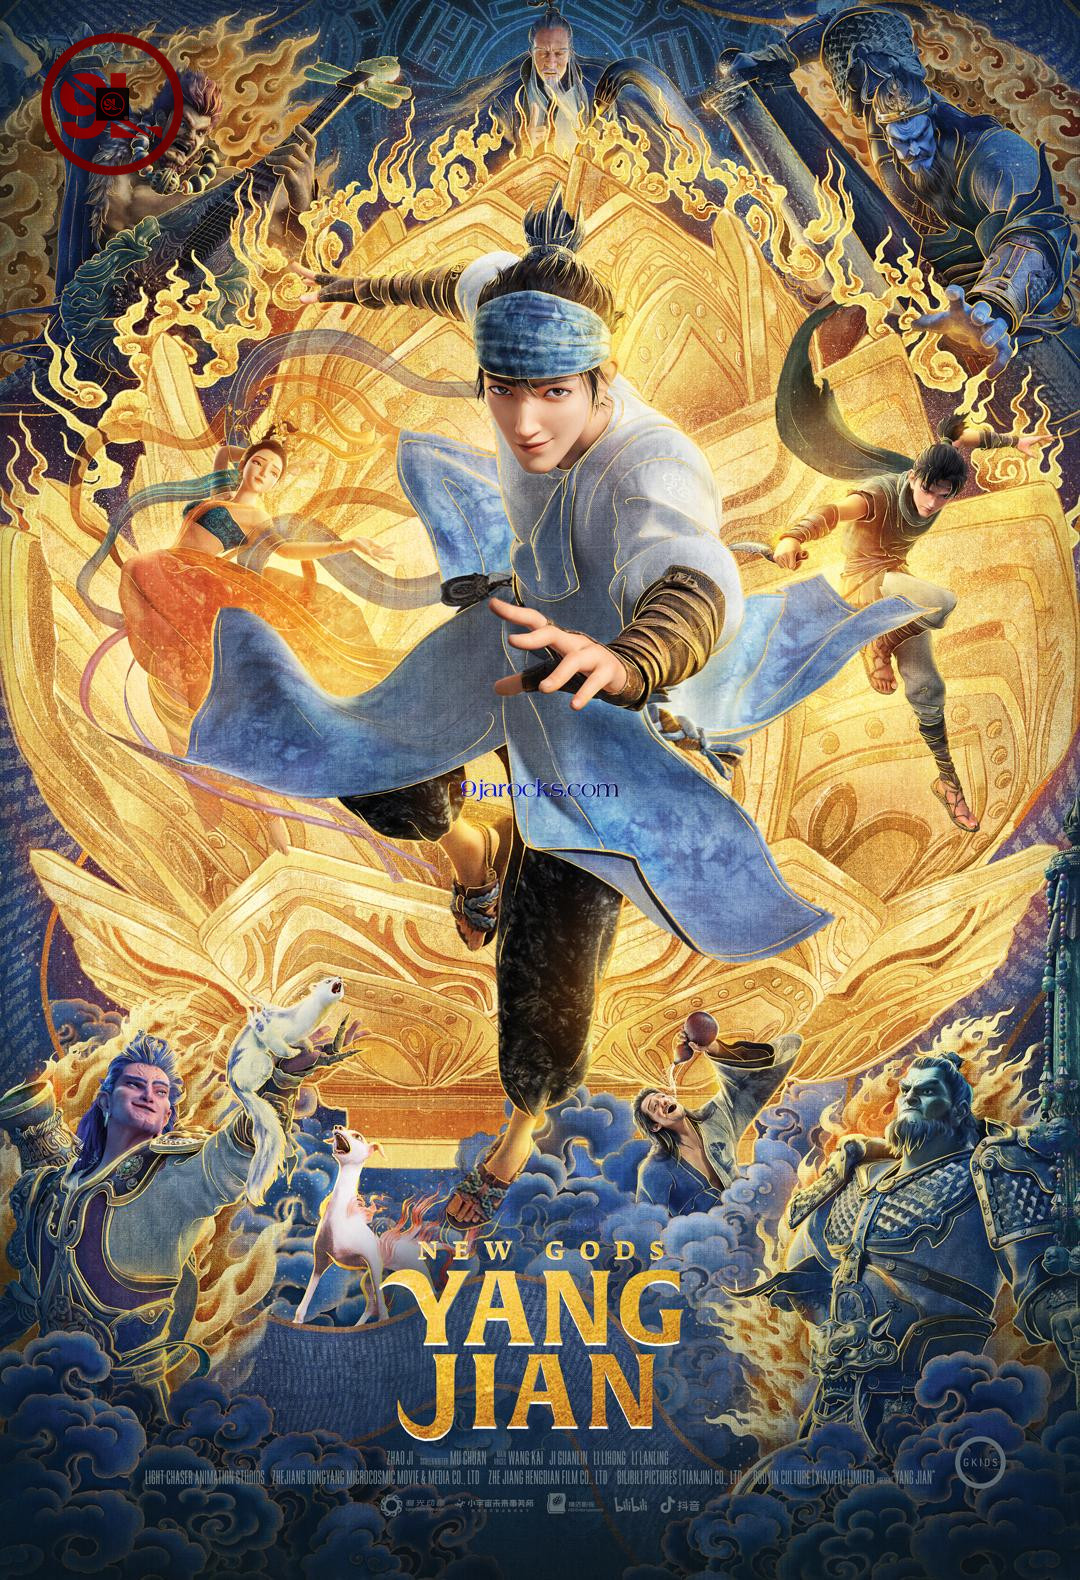 New Gods: Yang Jian (2022) – Chinese